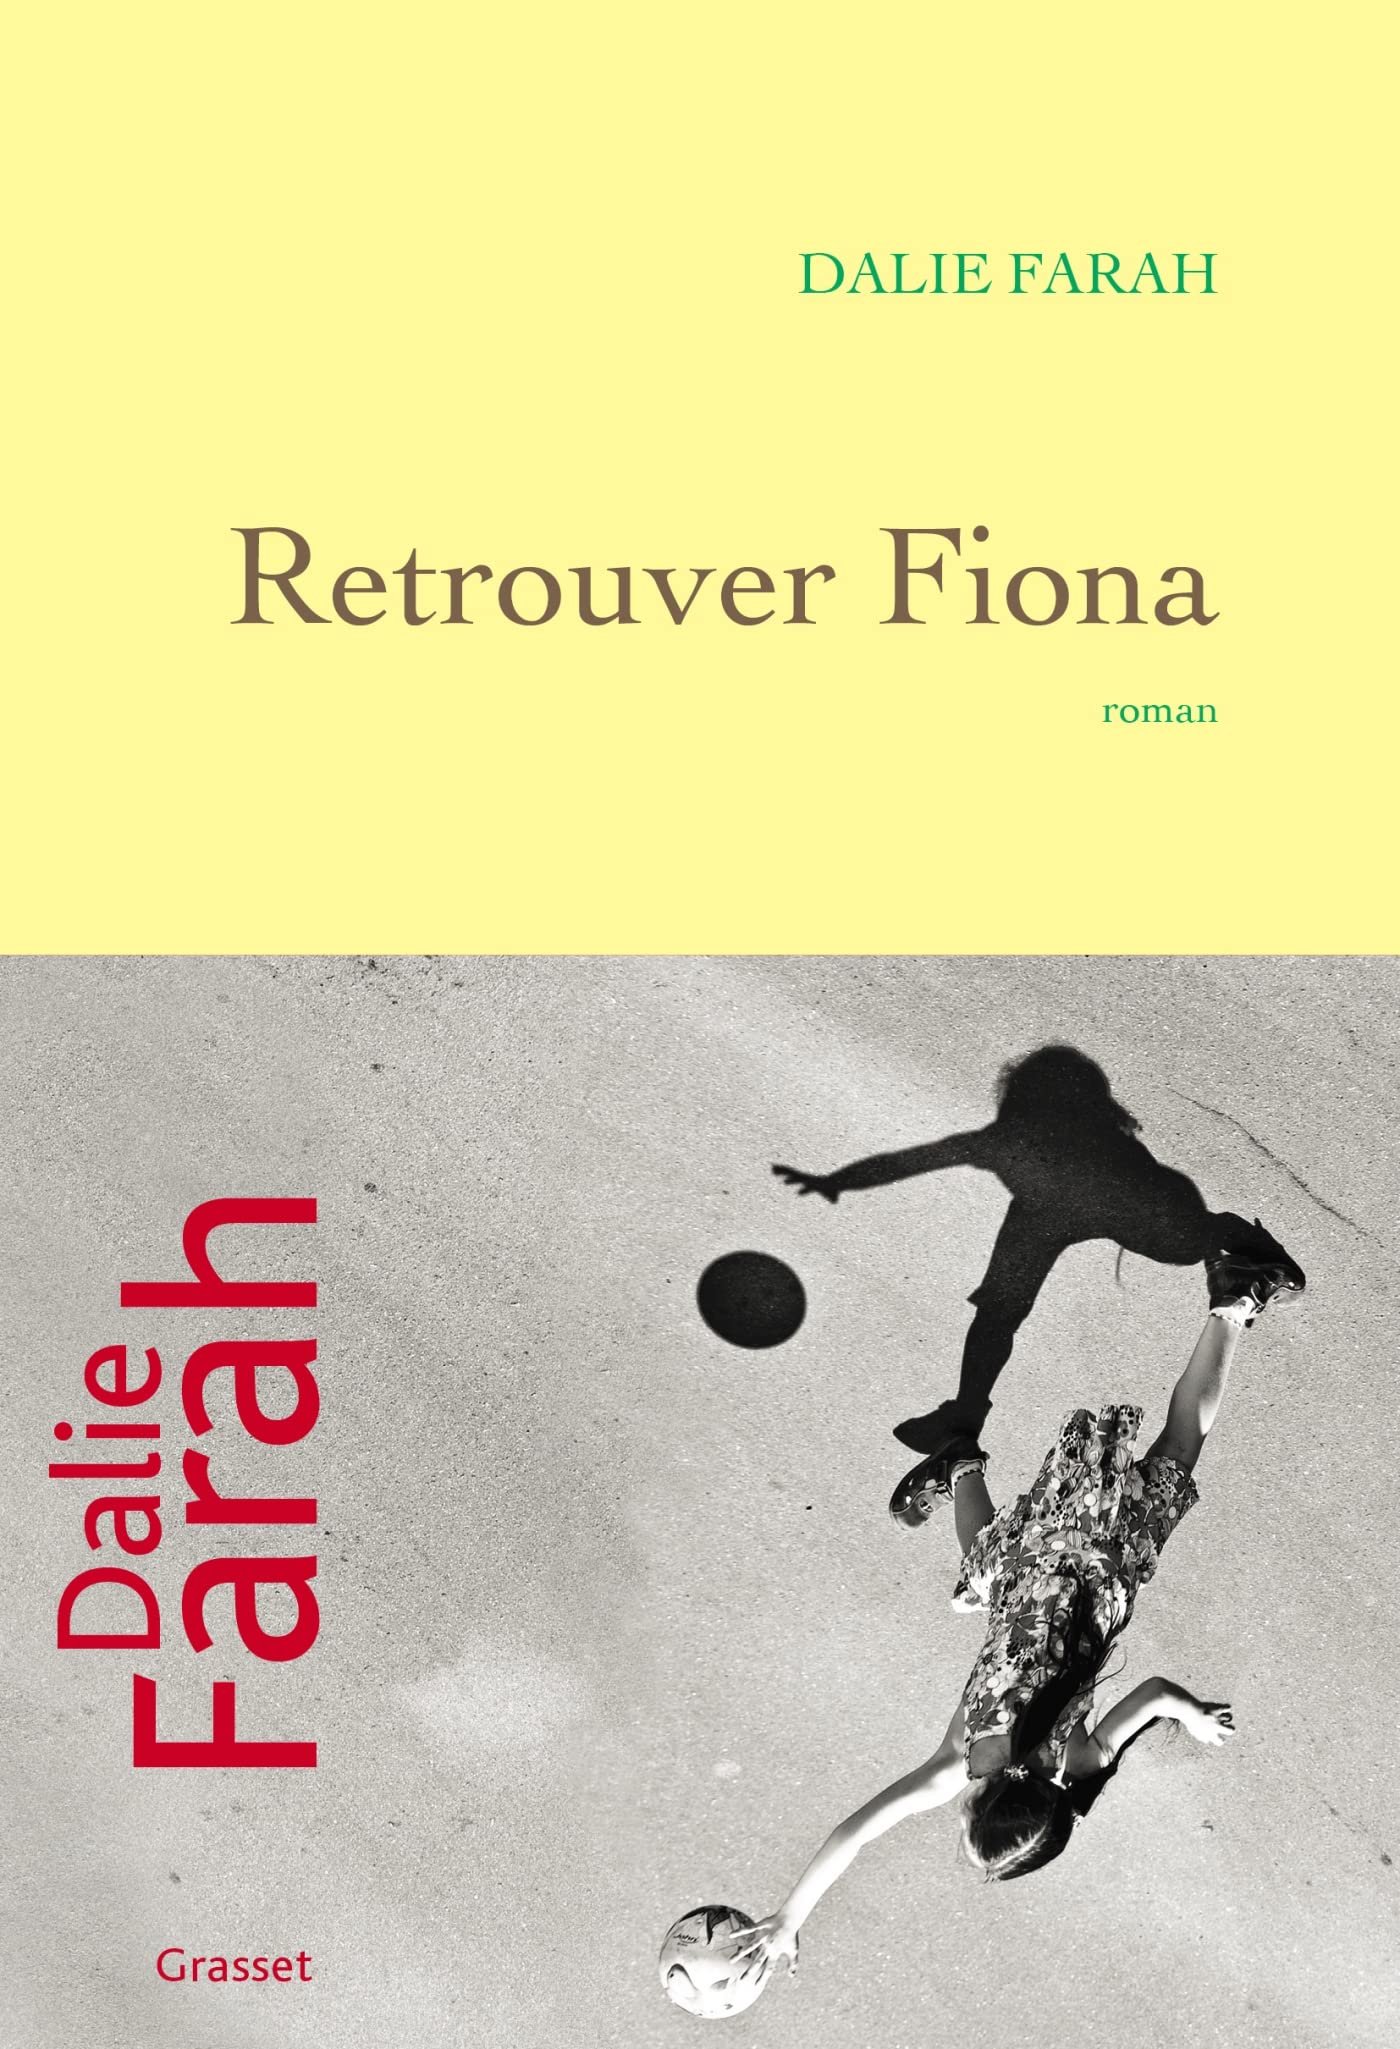 Dalie Farah – Retrouver Fiona